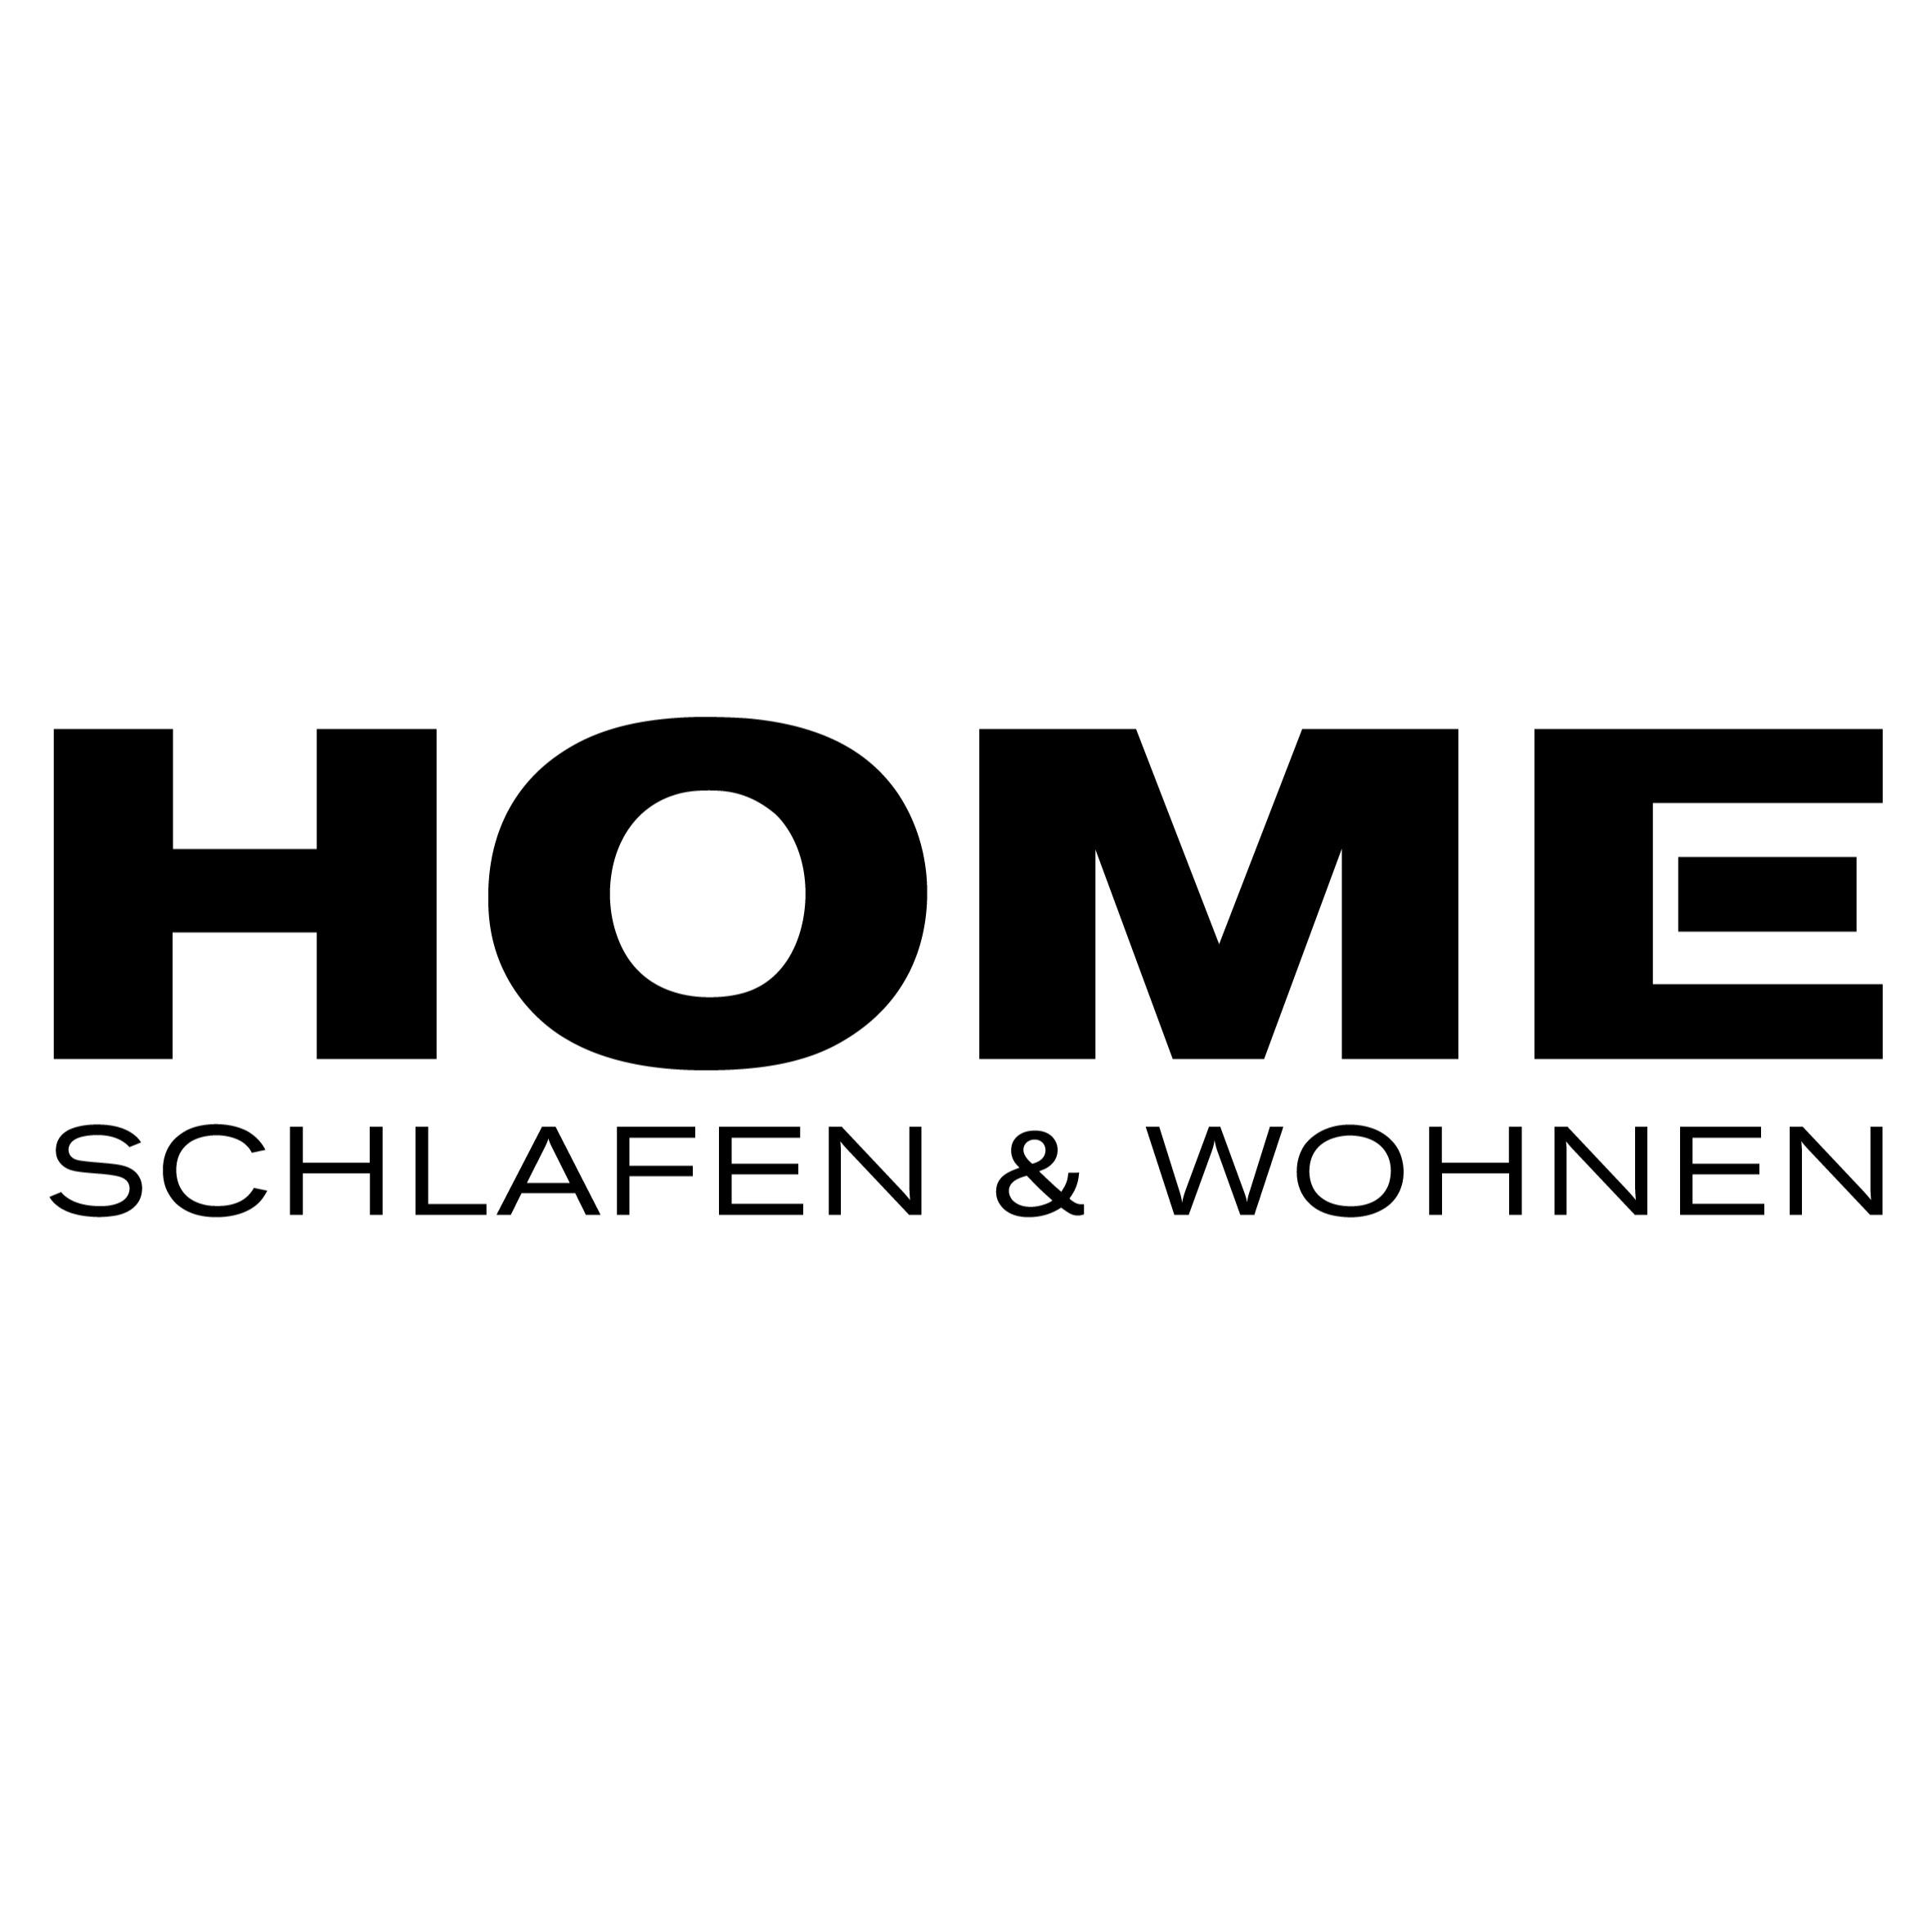 HOME Schlafen & Wohnen Düsseldorf Logo